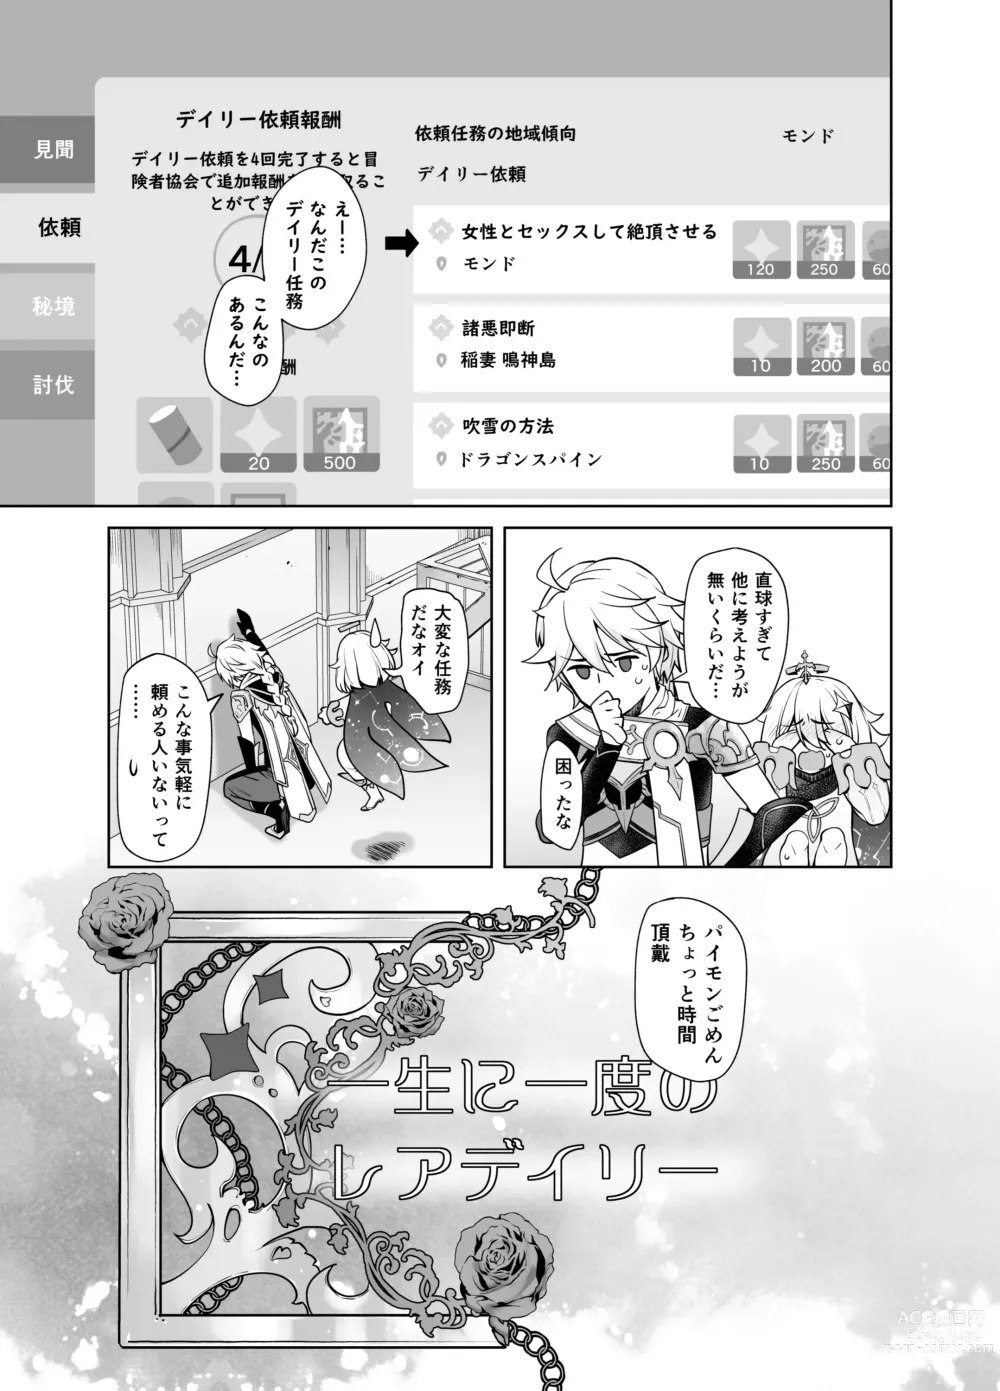 Page 4 of doujinshi Isshou ni Ichido no Rare Daily